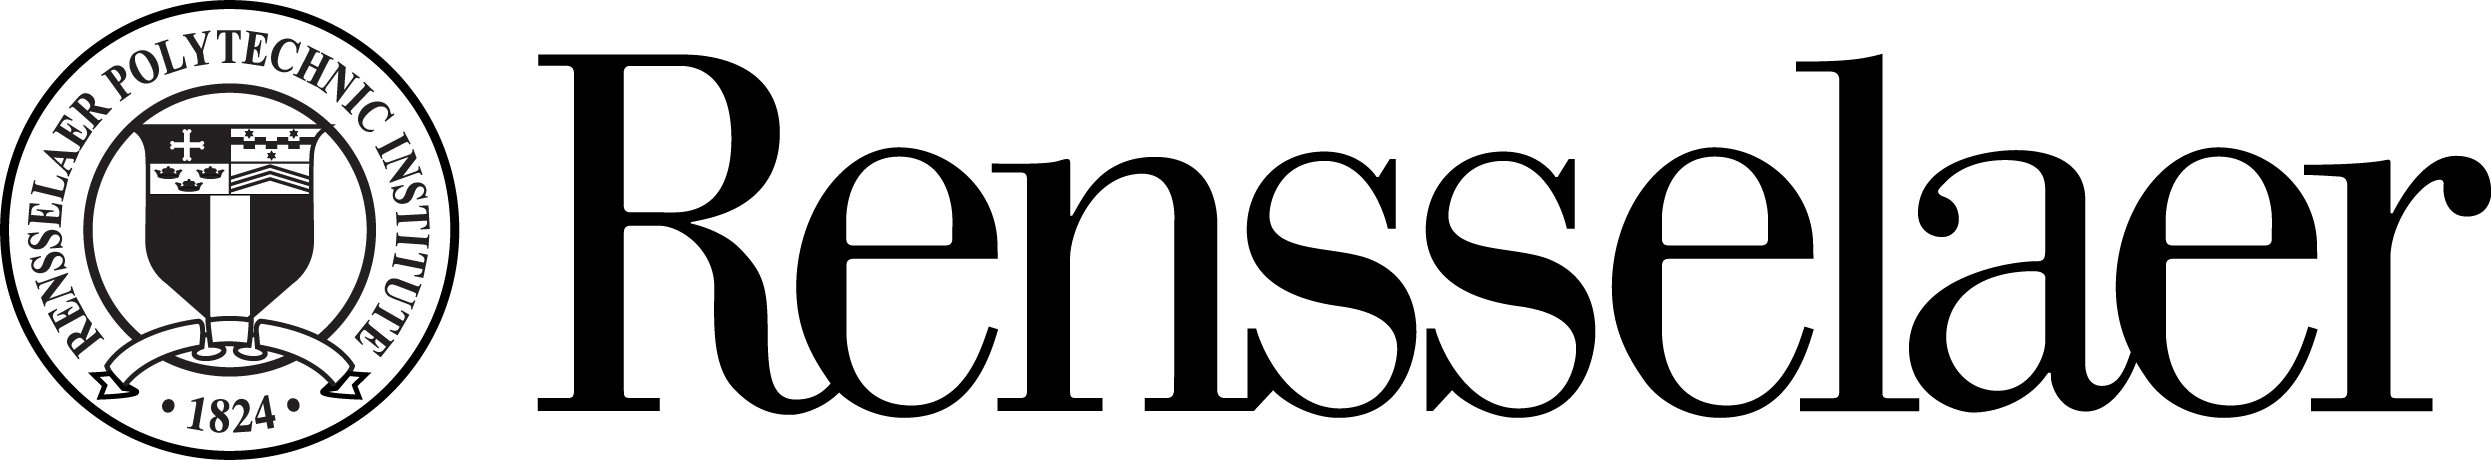 rpi logo